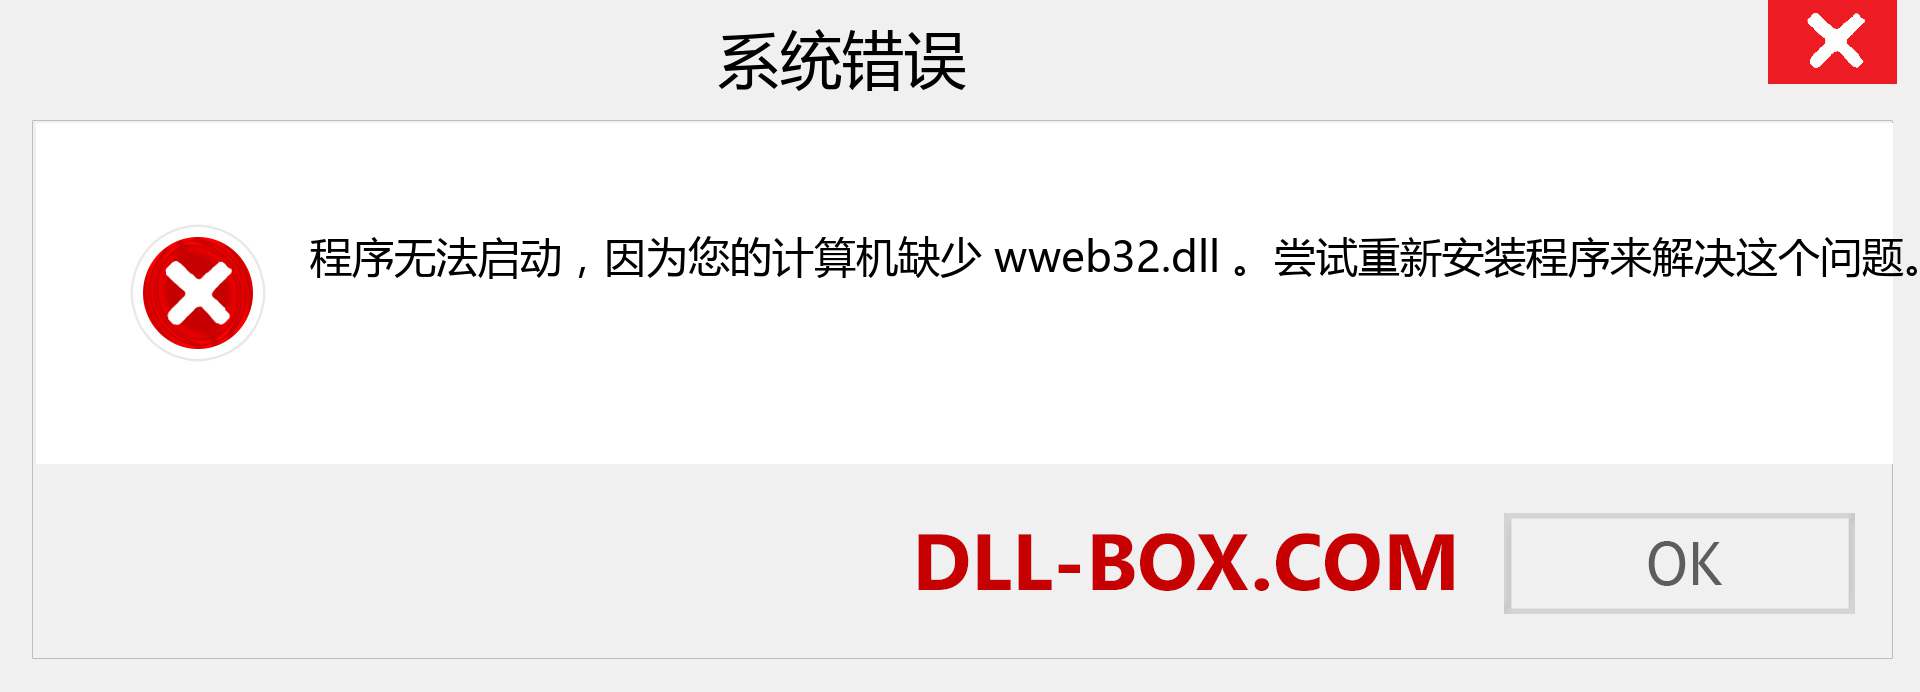 wweb32.dll 文件丢失？。 适用于 Windows 7、8、10 的下载 - 修复 Windows、照片、图像上的 wweb32 dll 丢失错误